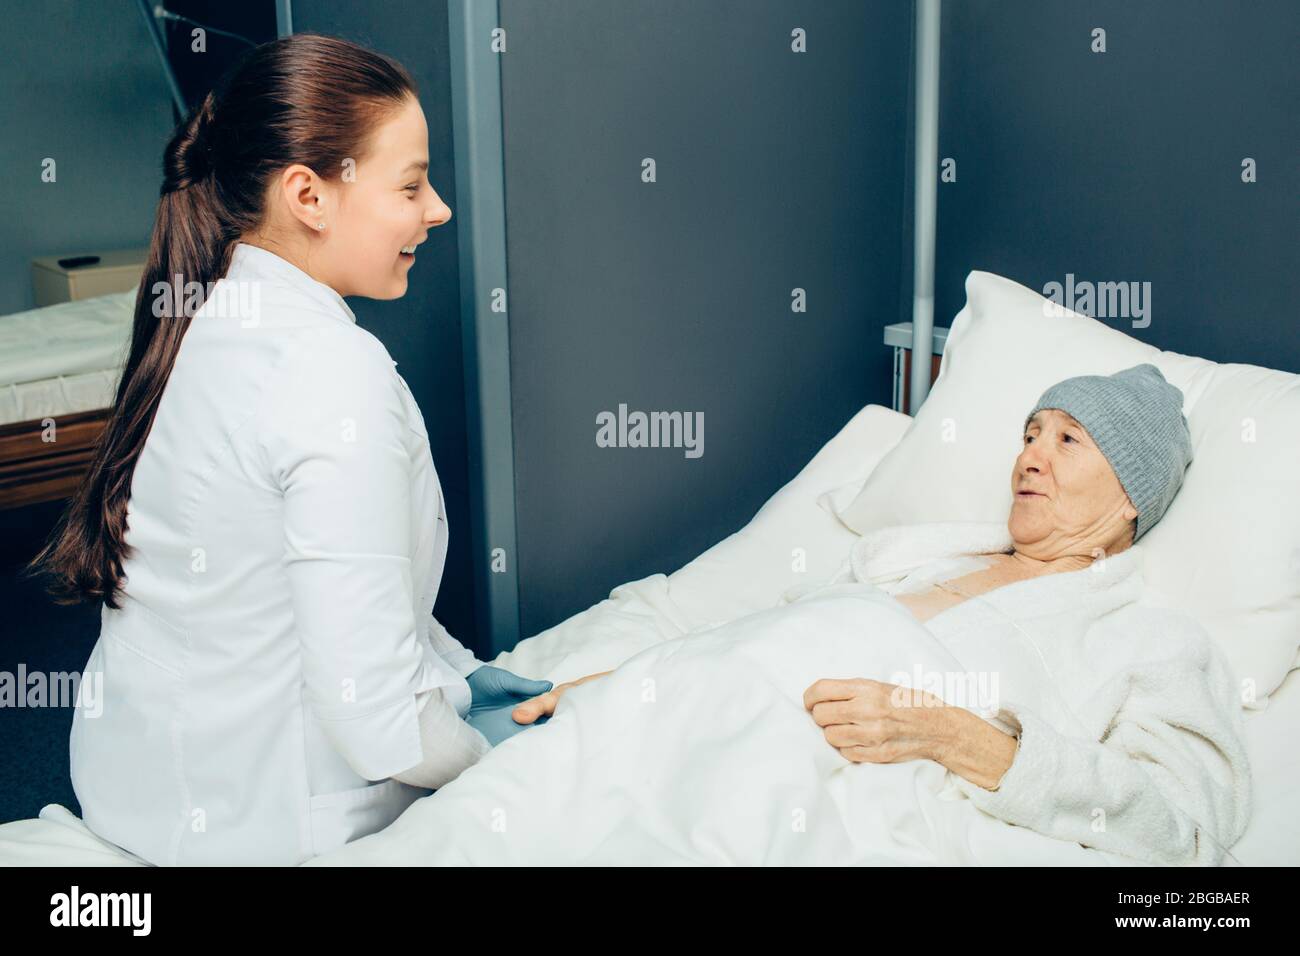 médecin communiquant avec un patient dans une clinique d'oncologie. Femme âgée recevant une chimiothérapie par port de perfusion pendant le traitement du cancer Banque D'Images